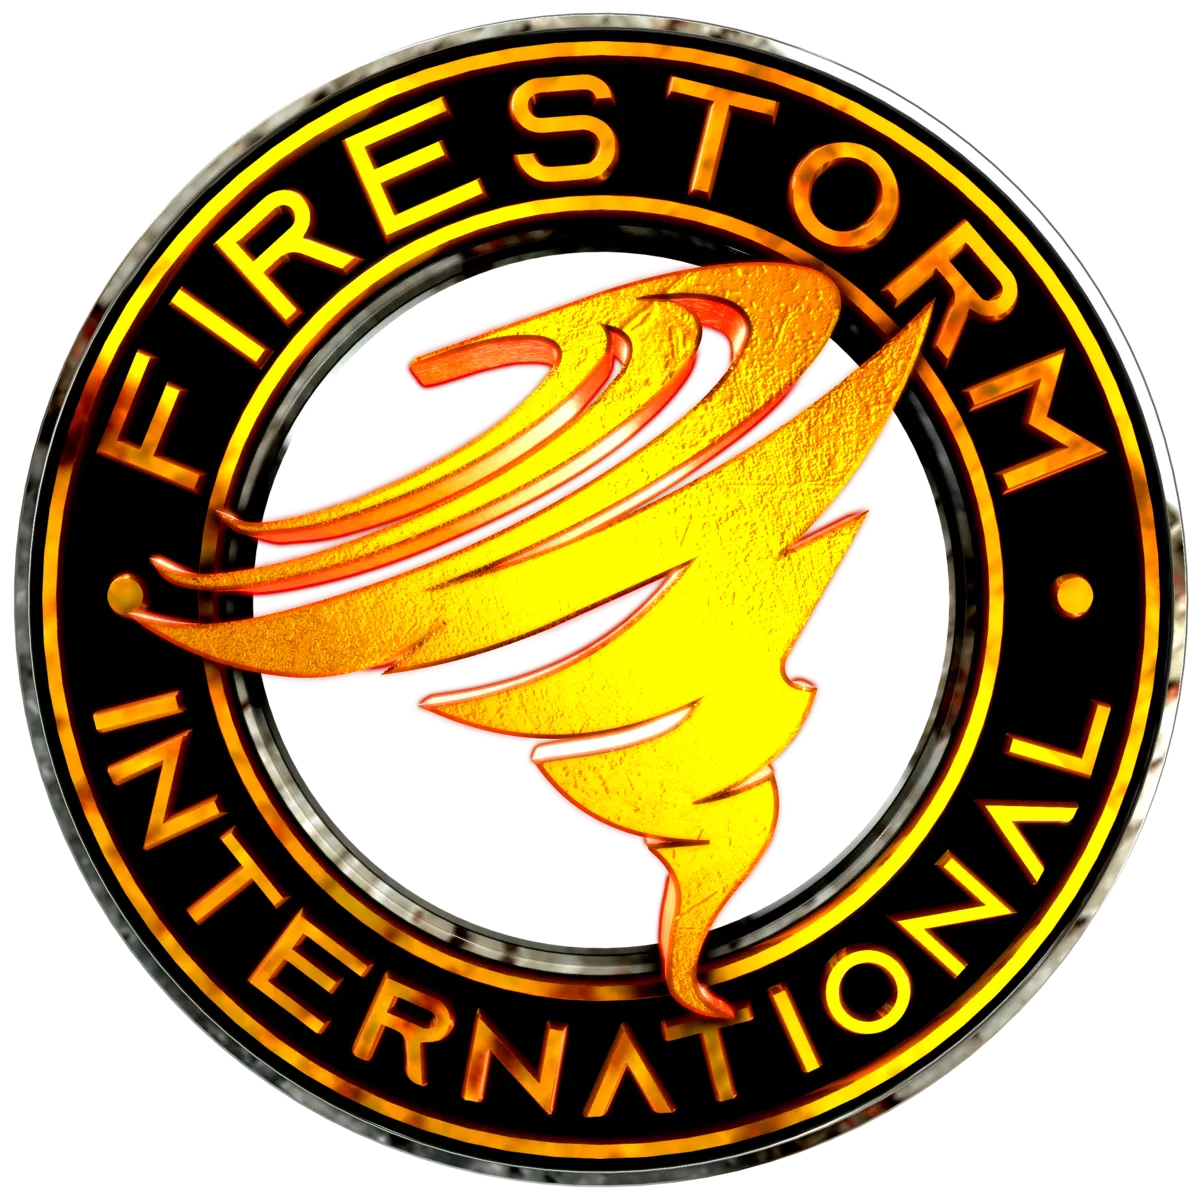 Firestorm International